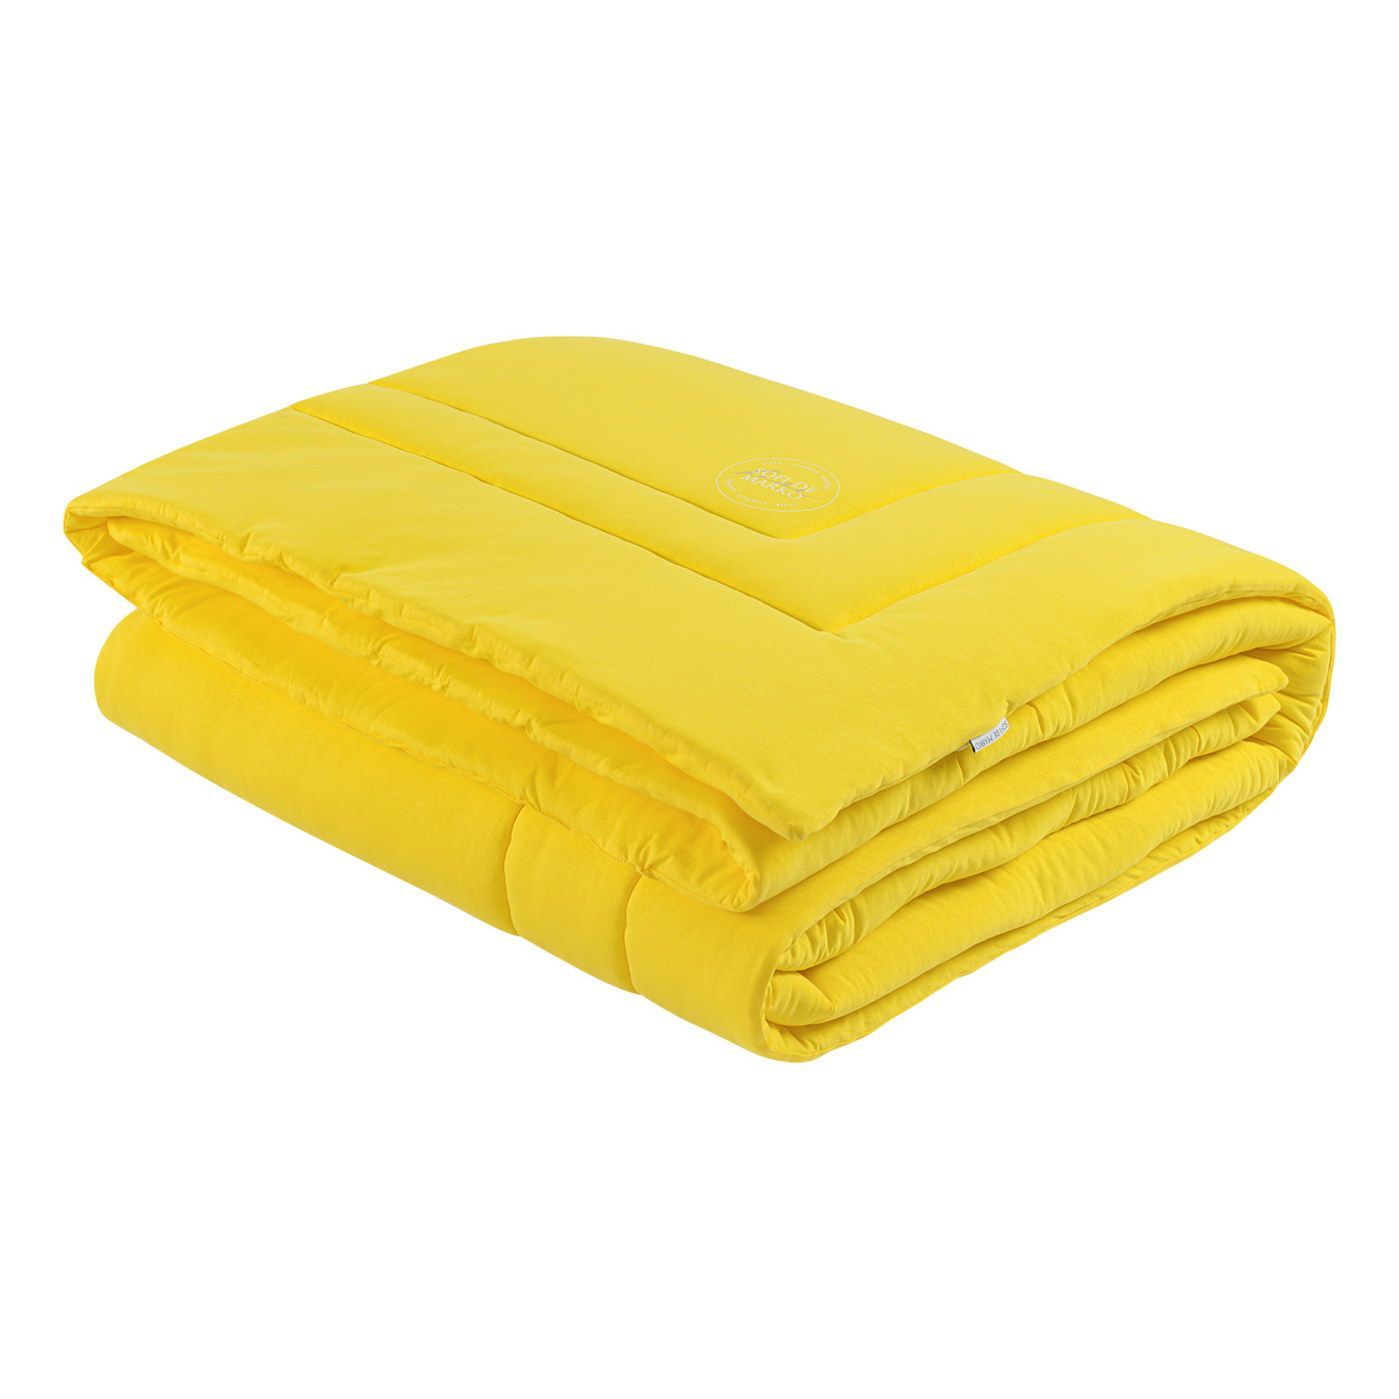 Одеяло-покрывало Роланд цвет: желтый (195х215 см), размер 195х215 см sofi973237 Одеяло-покрывало Роланд цвет: желтый (195х215 см) - фото 1